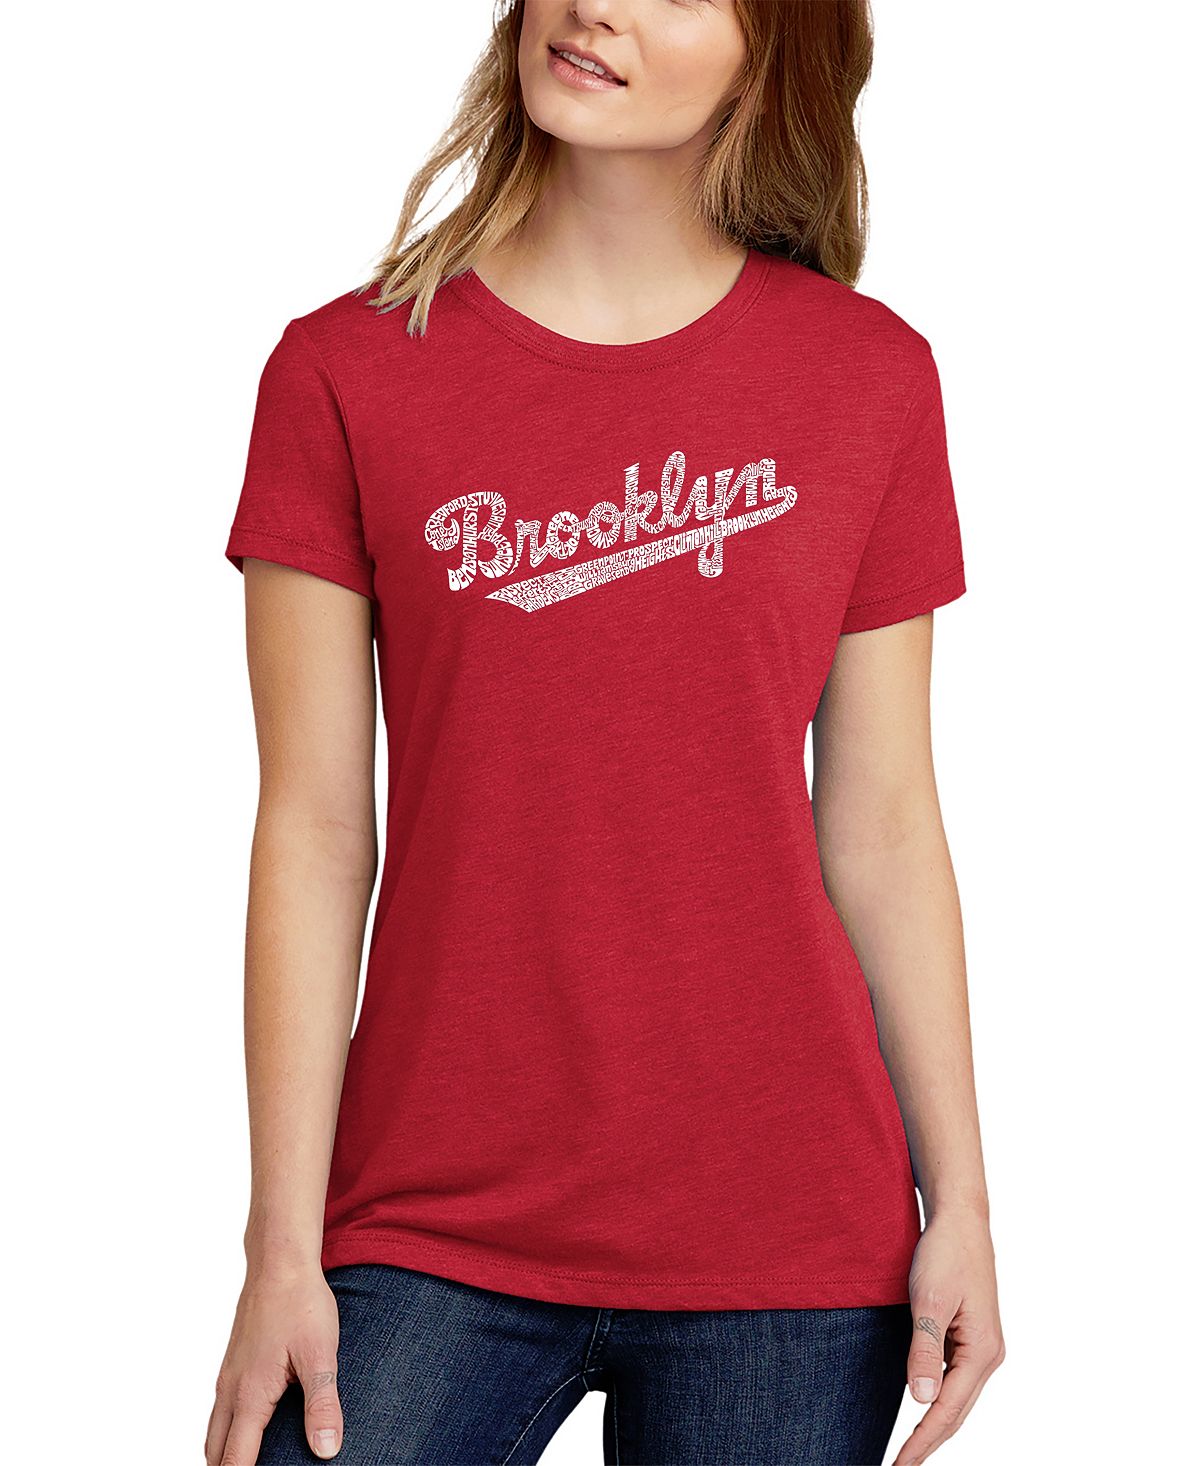 Женская футболка premium blend word art brooklyn neighborhoods LA Pop Art, красный